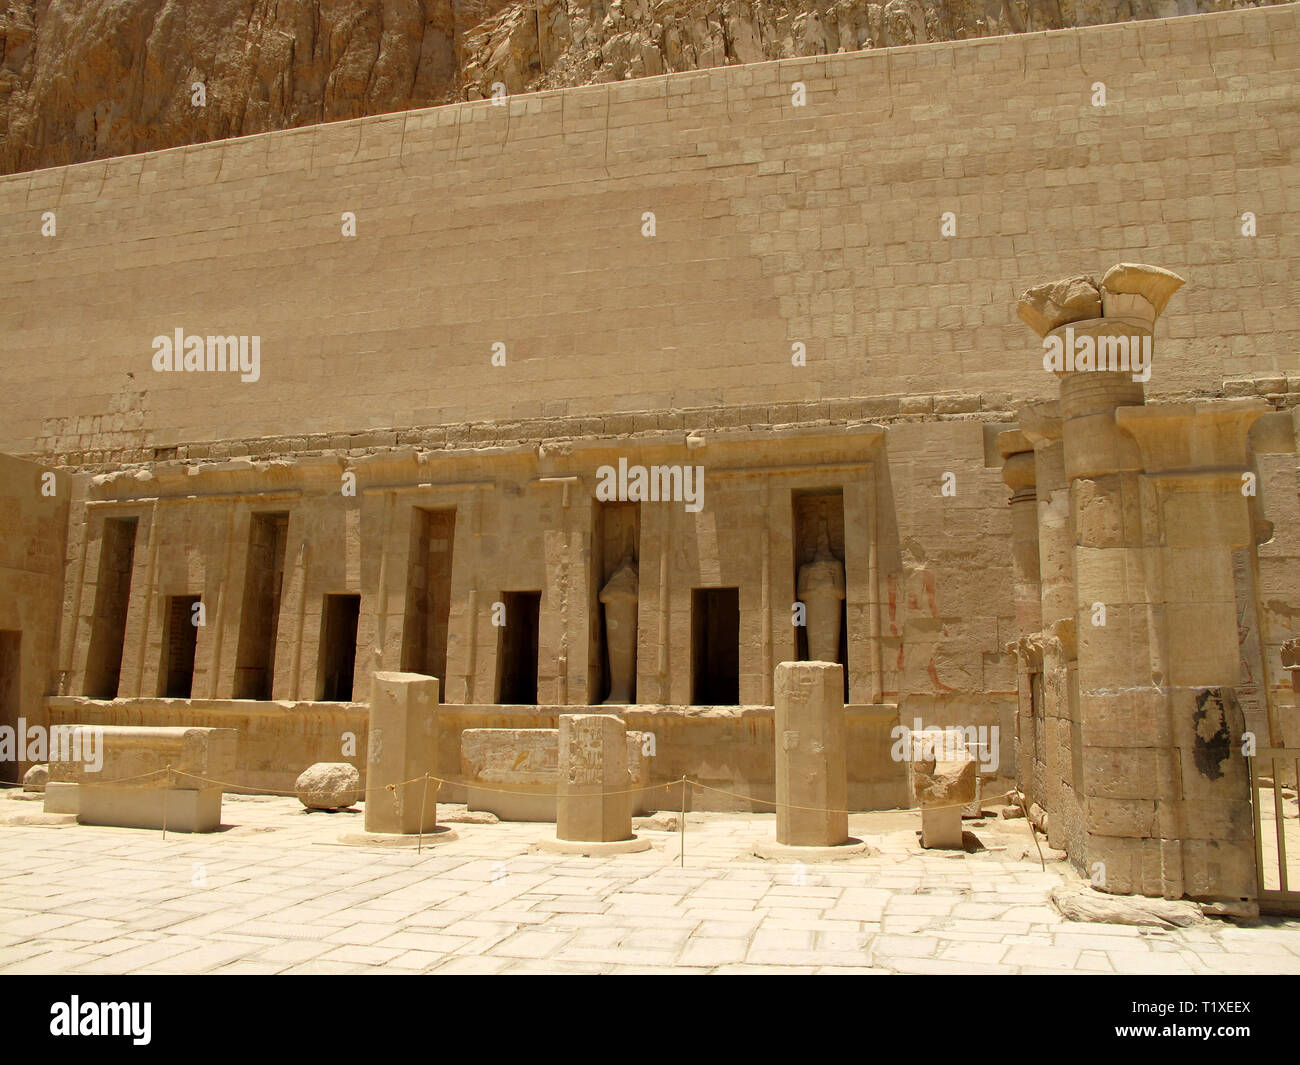 Egipto, Luxor - 07.26.2010: el templo de la Reina Hatshepsup. Los monumentos históricos de la antigüedad, lugares de Egipto Luxor. Foto de stock